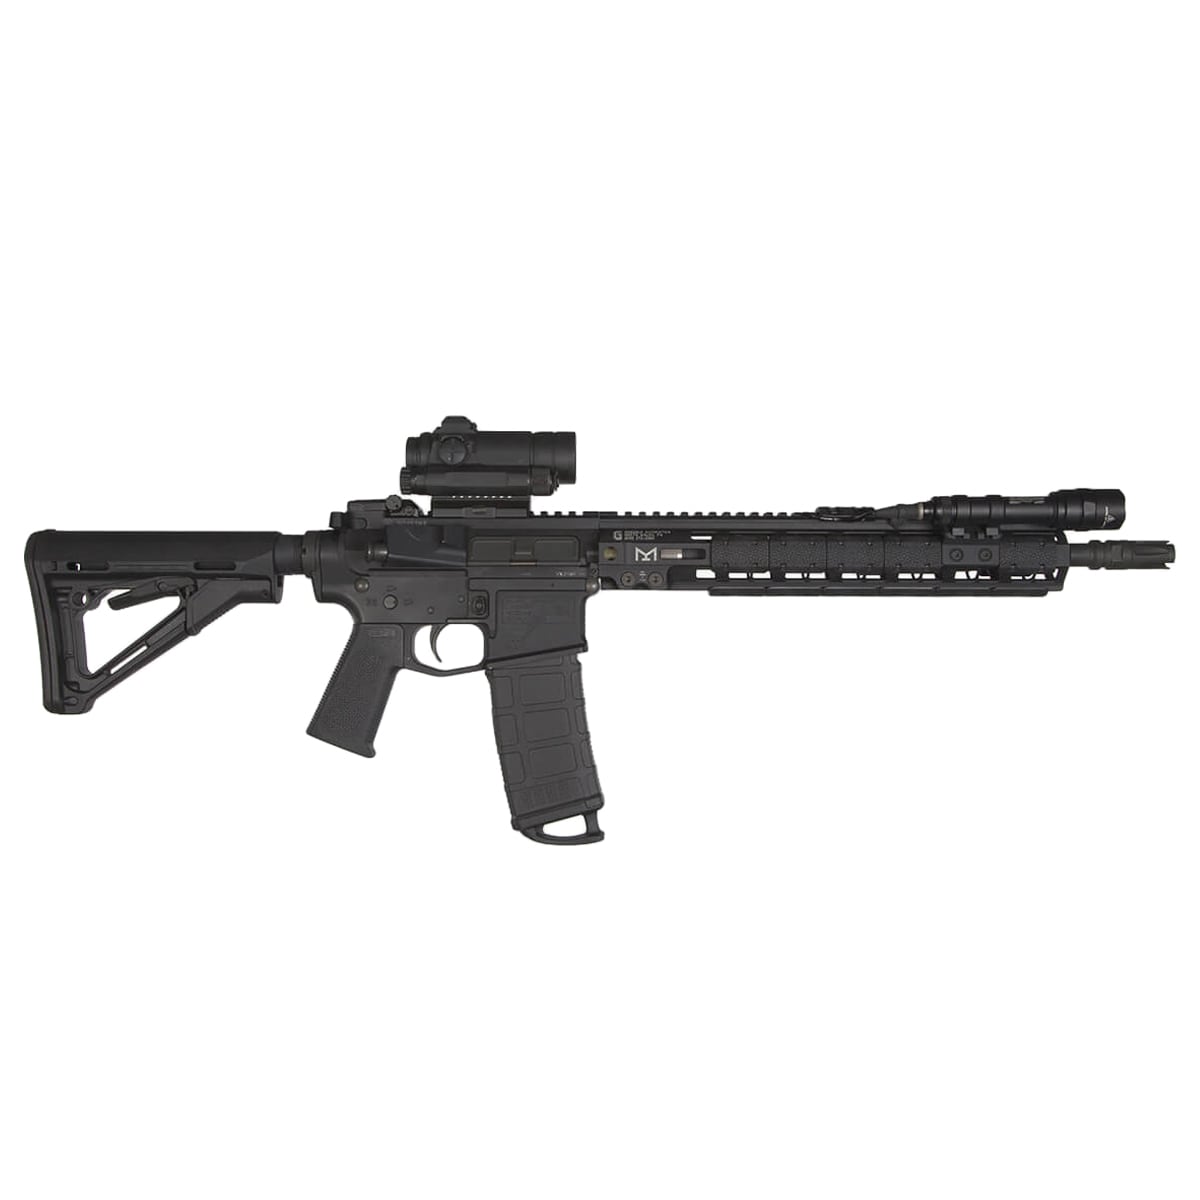 Chwyt pistoletowy Magpul MOE-K Grip do karabinków AR15/M4 - Black